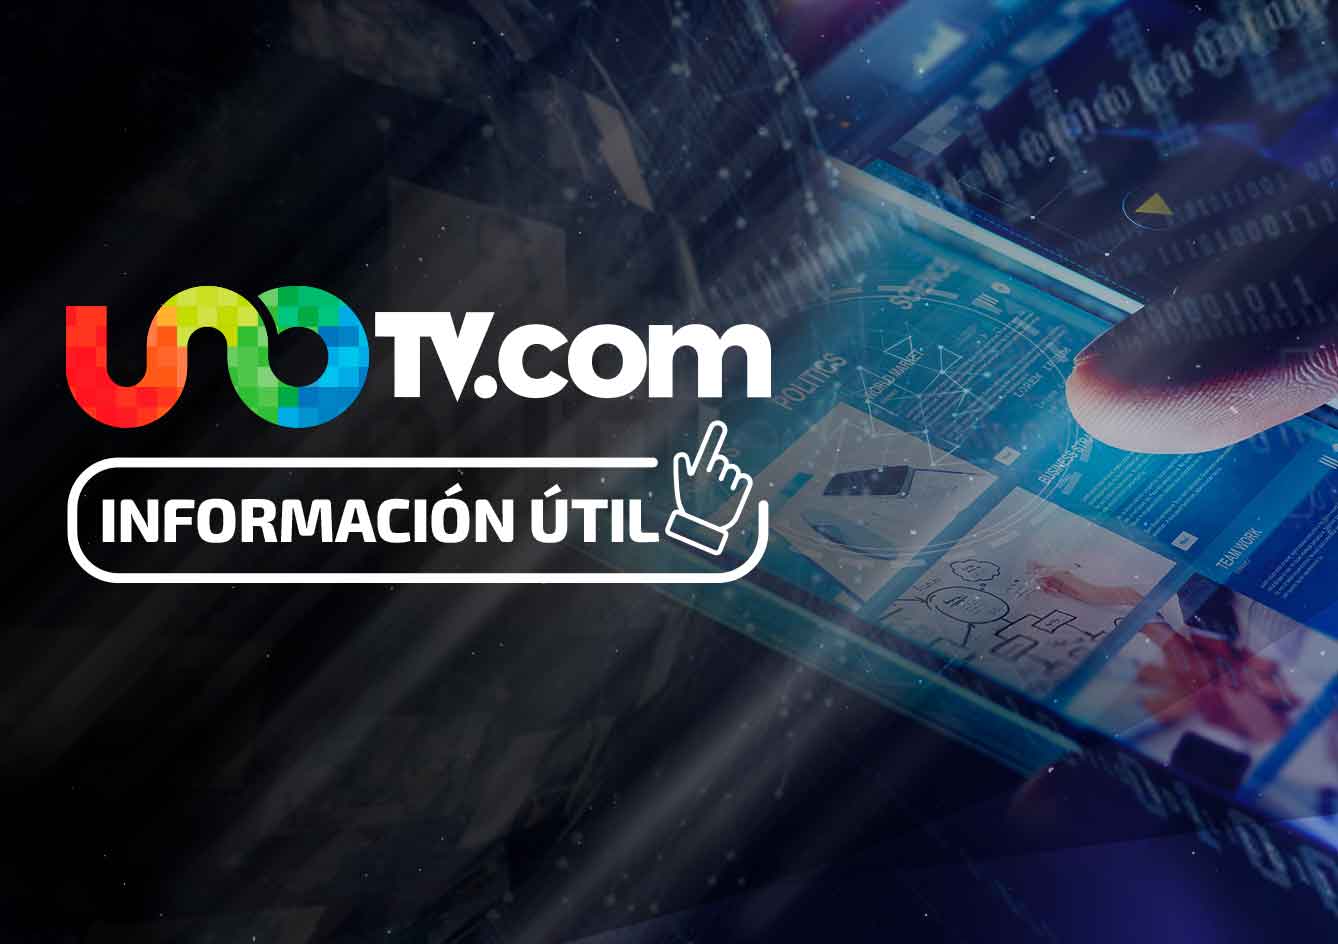 Ágil y segura: Telmex pone a tu alcance su servicio de videoconferencia